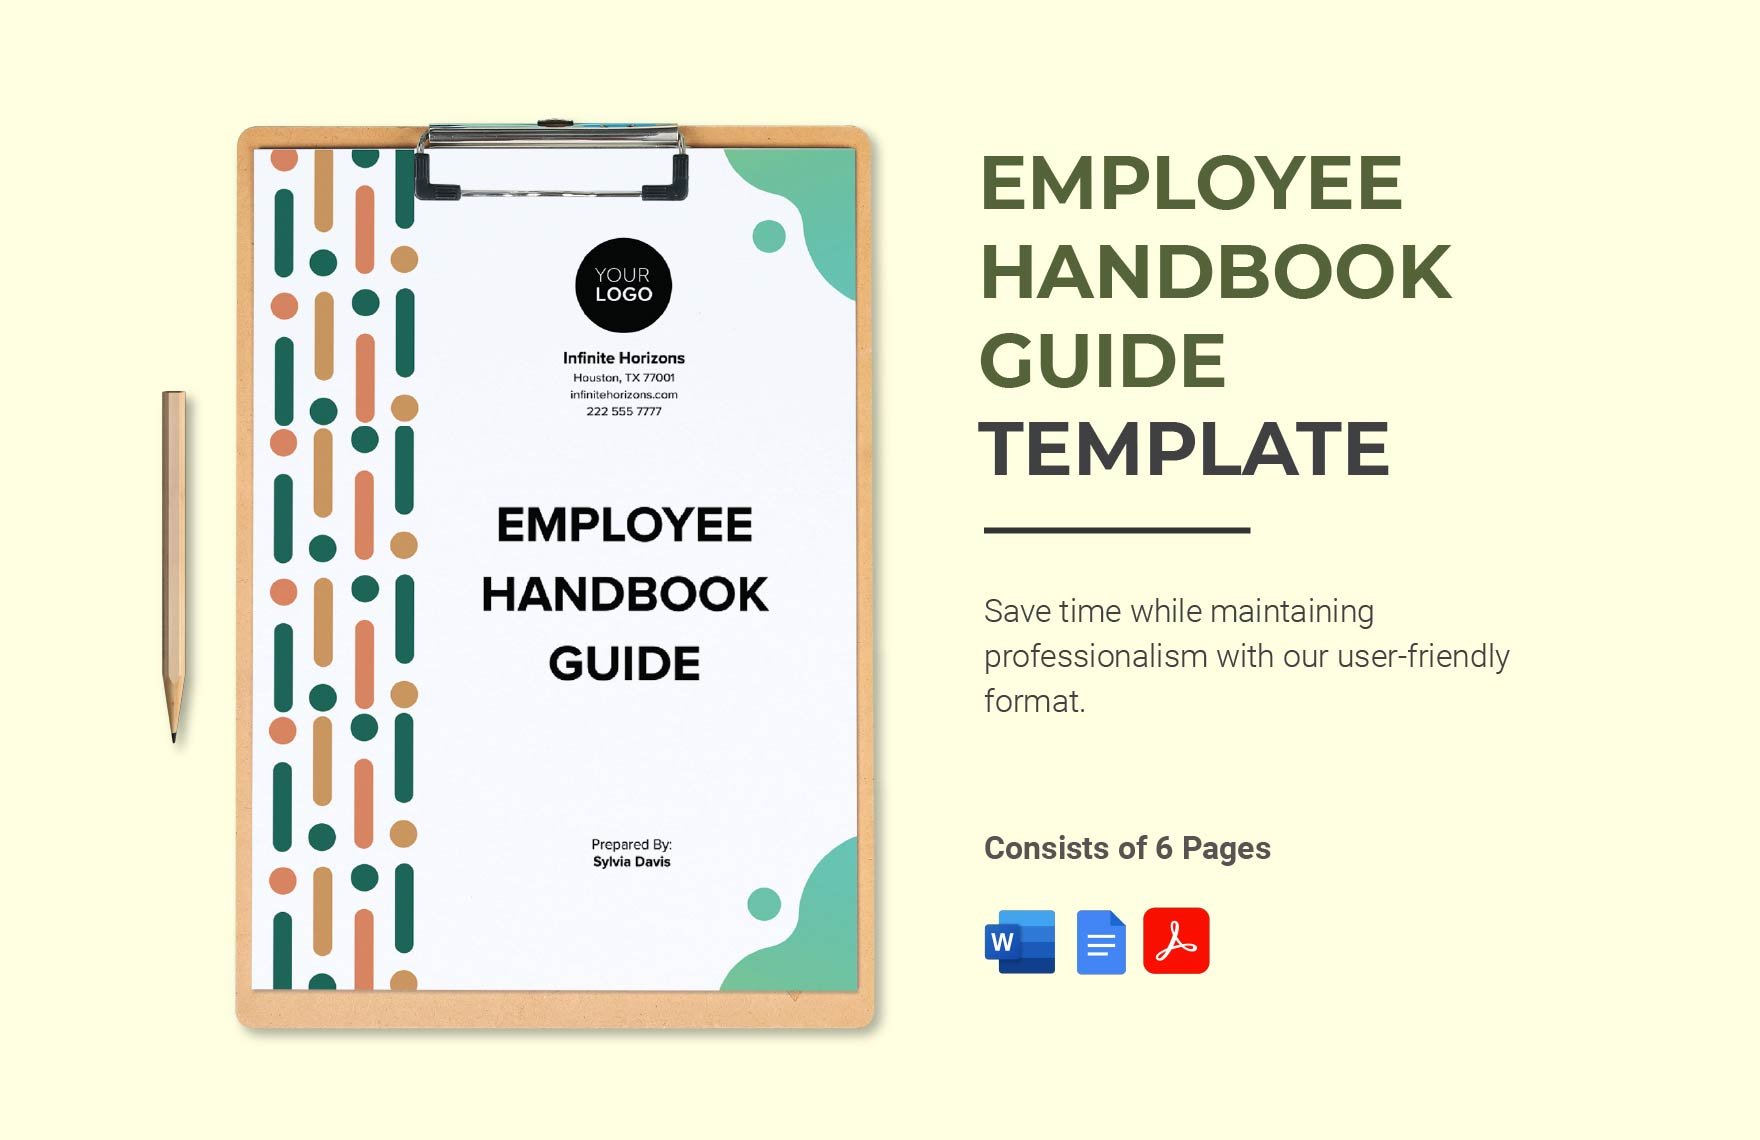 Employee Handbook Guide Template